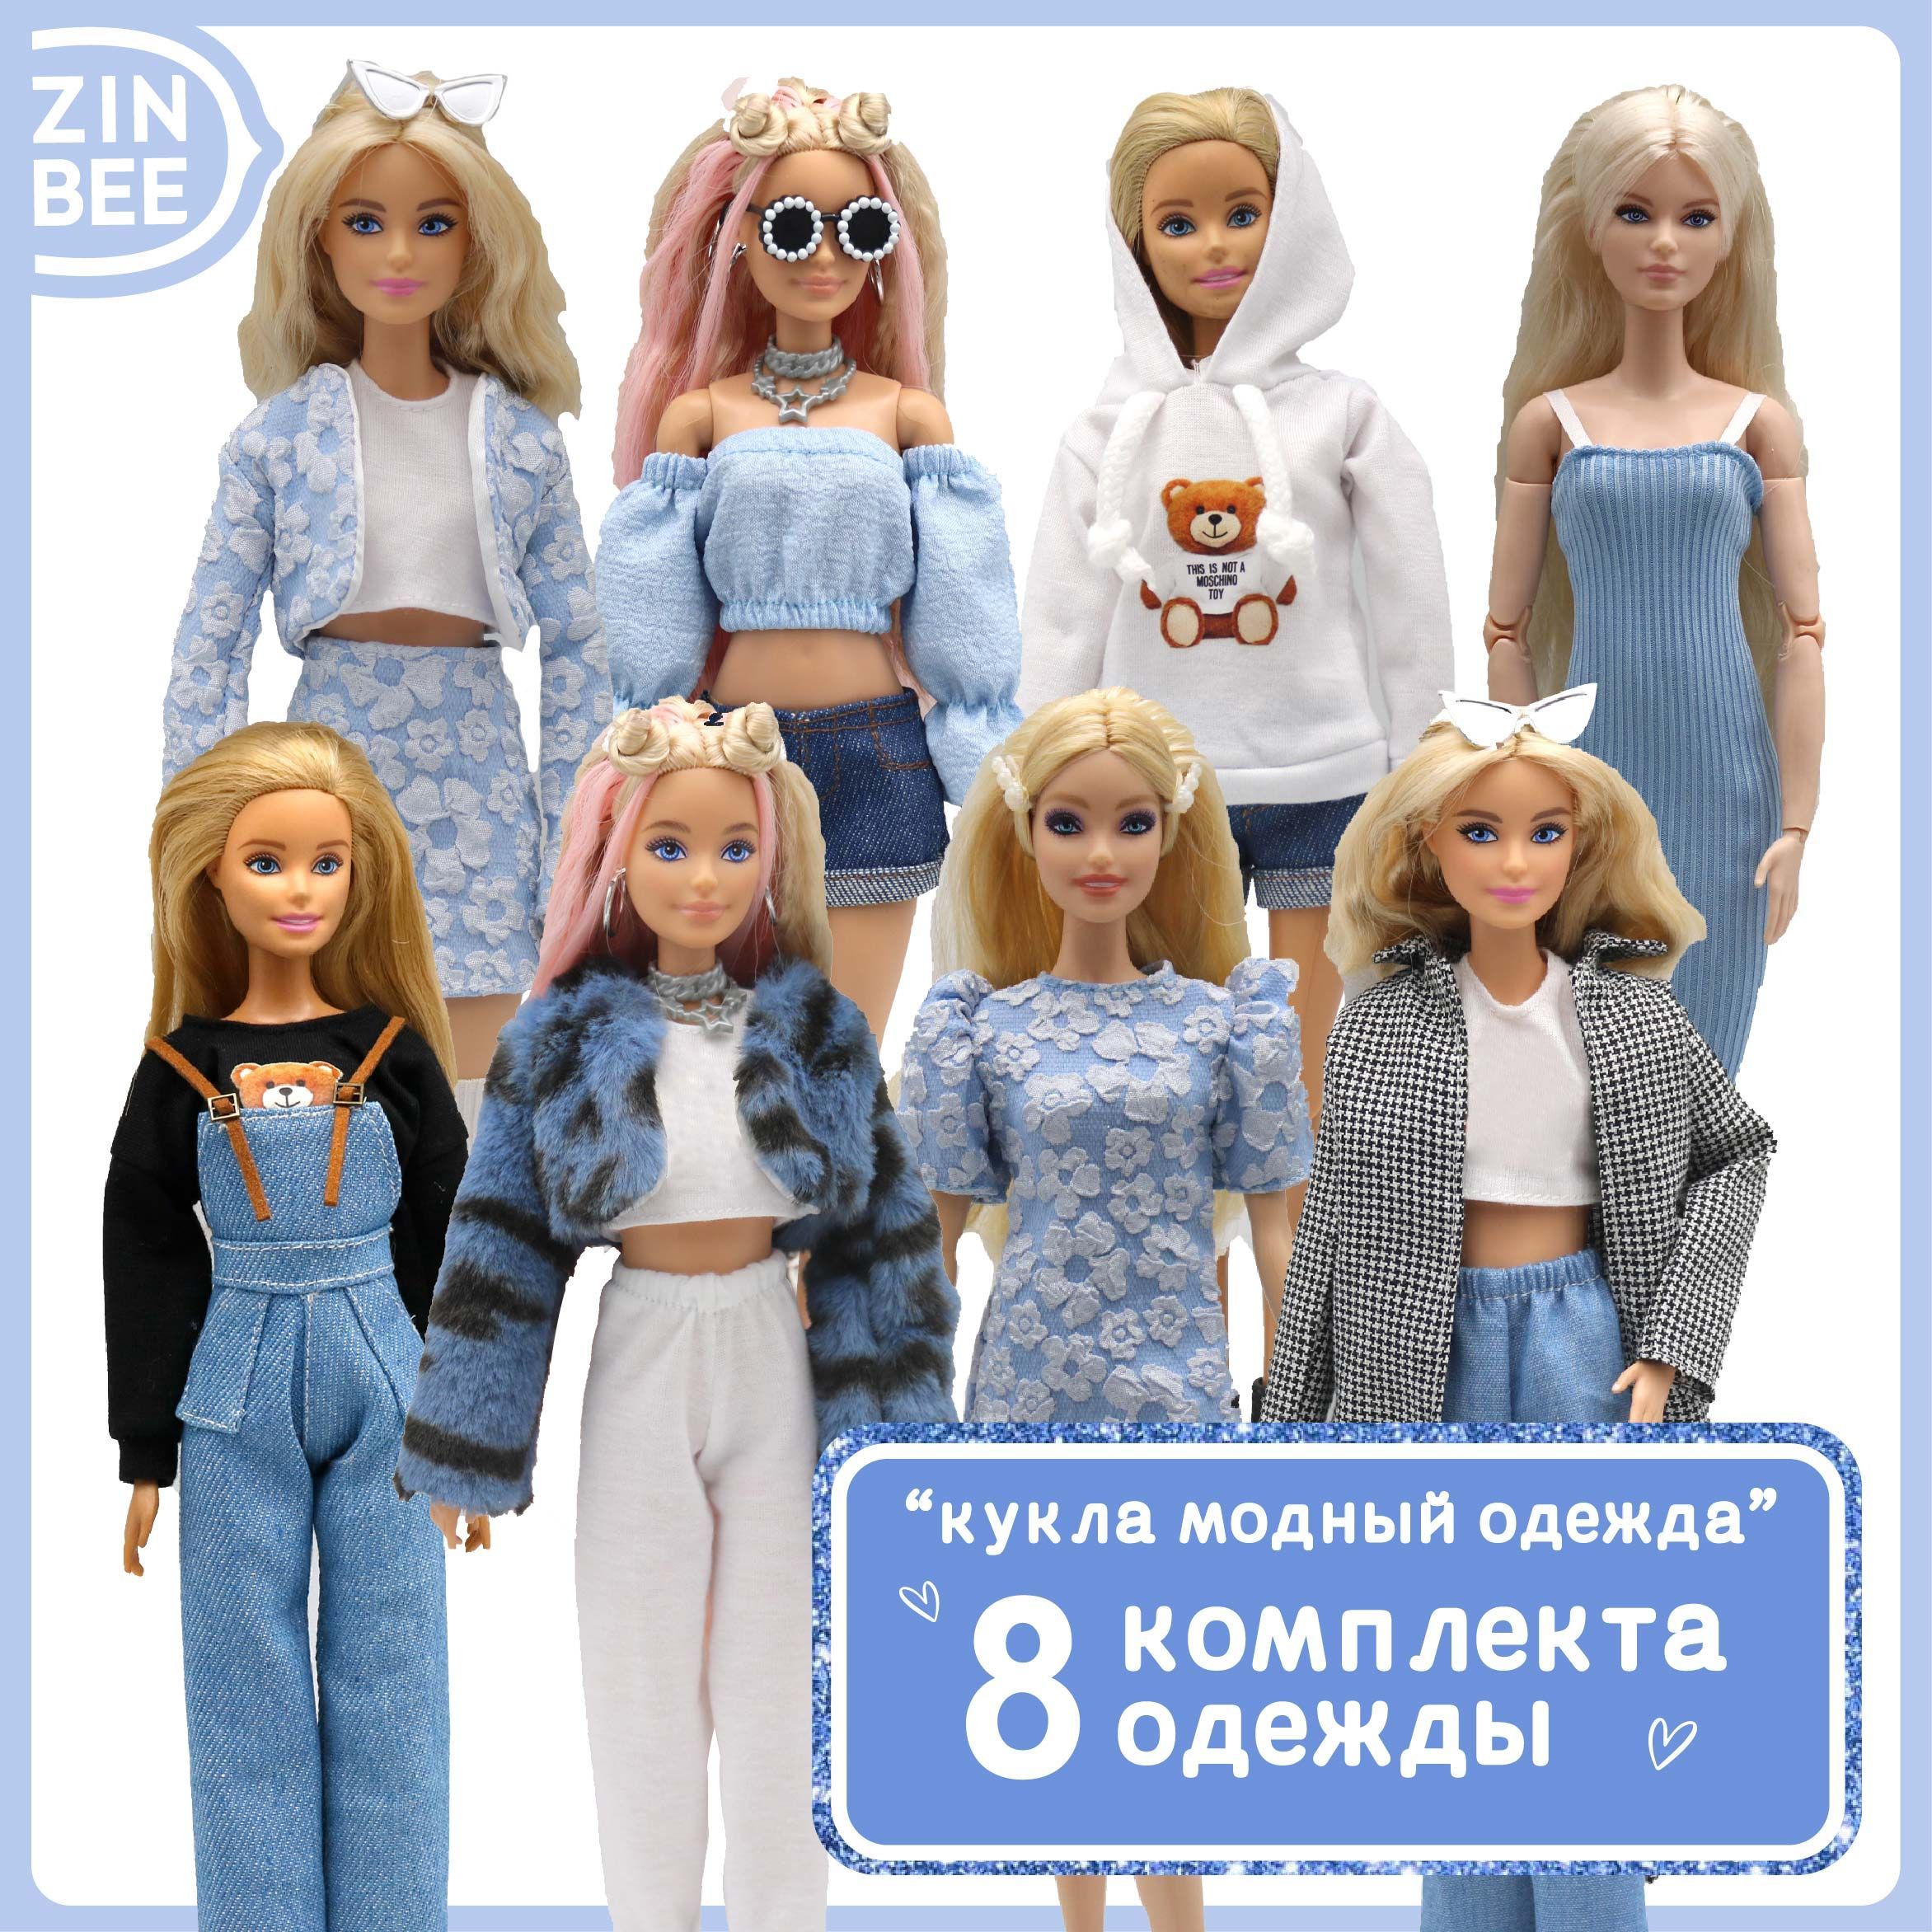 Скачать выкройку Одежда для куклы Барби №5632 в PDF бесплатно